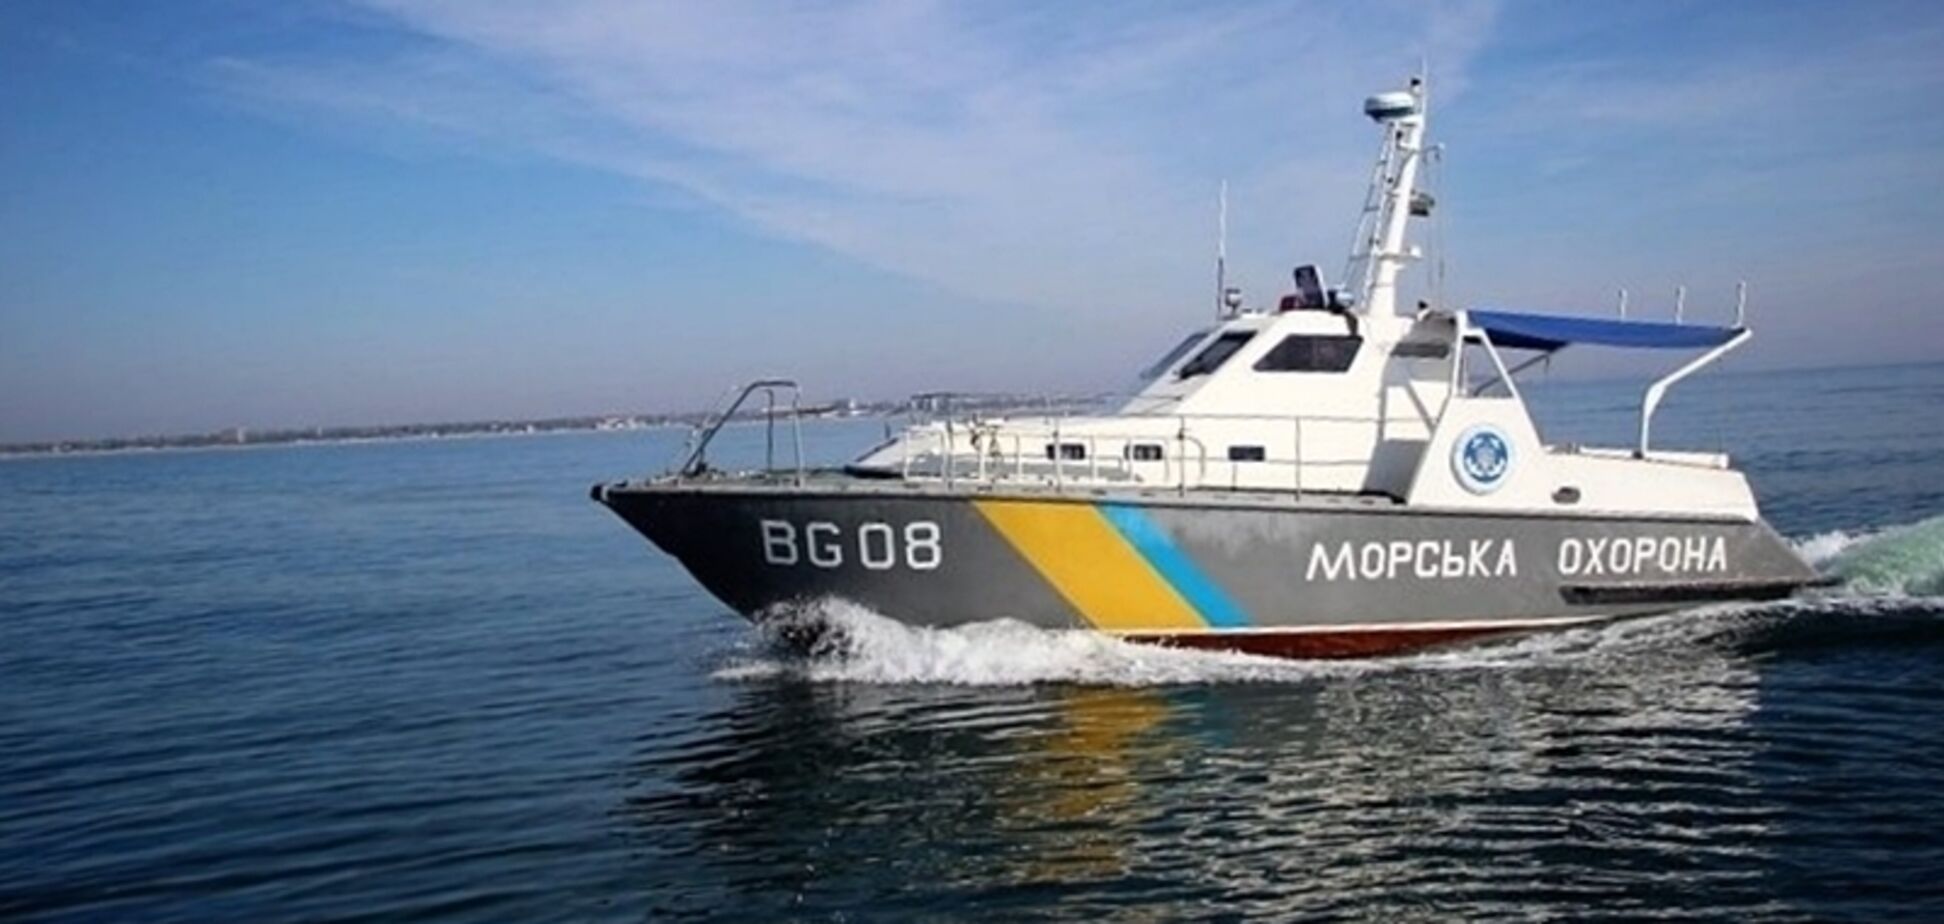 Конфлікт в Азовському морі: українці дали свій прогноз